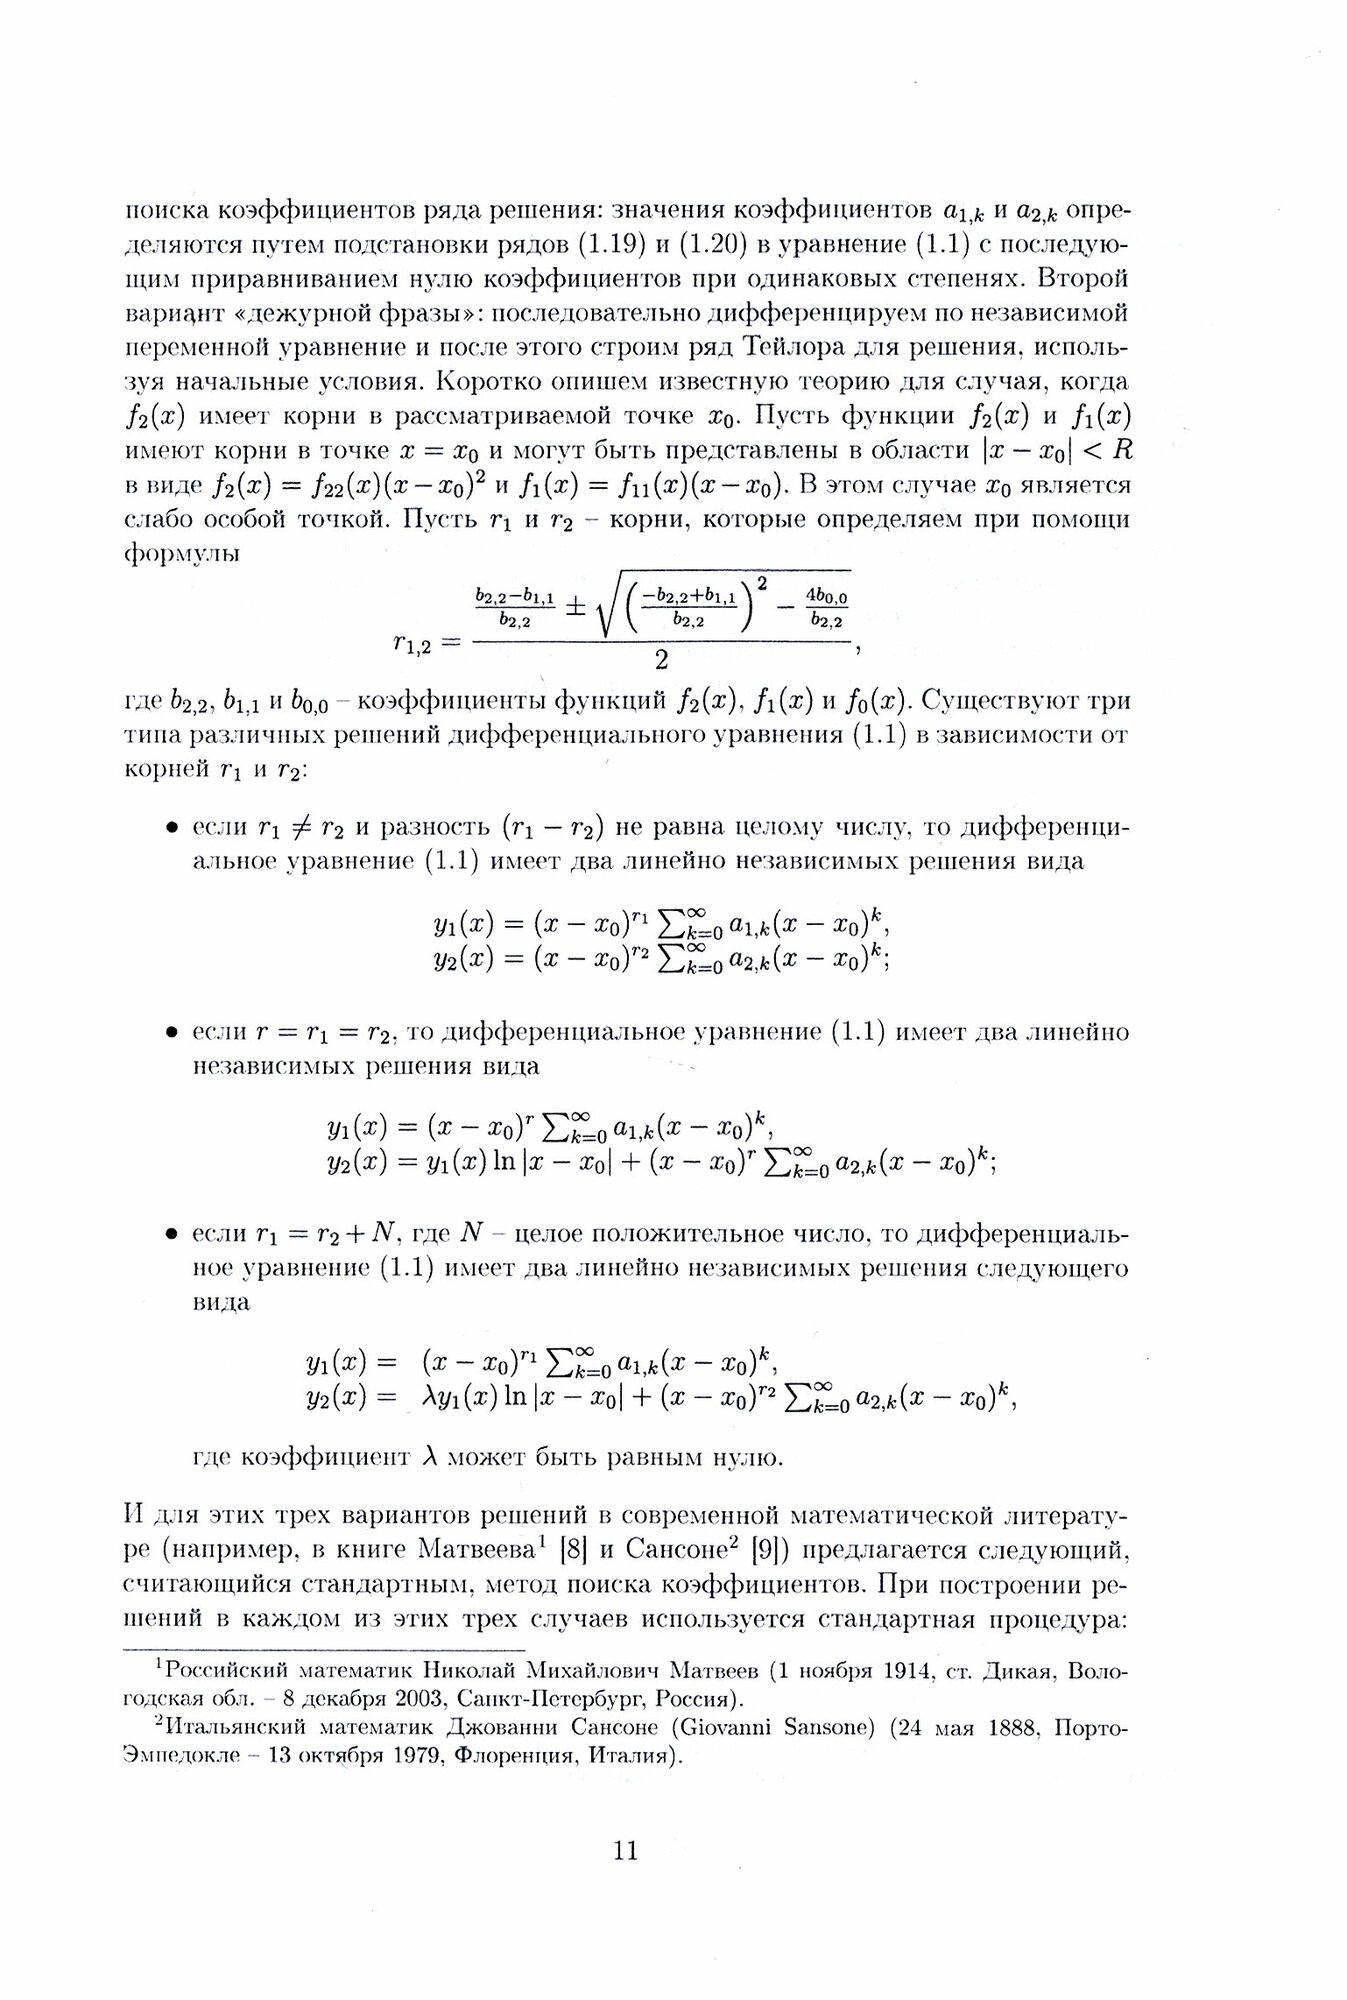 Дифференциальные уравнения второго порядка - фото №2